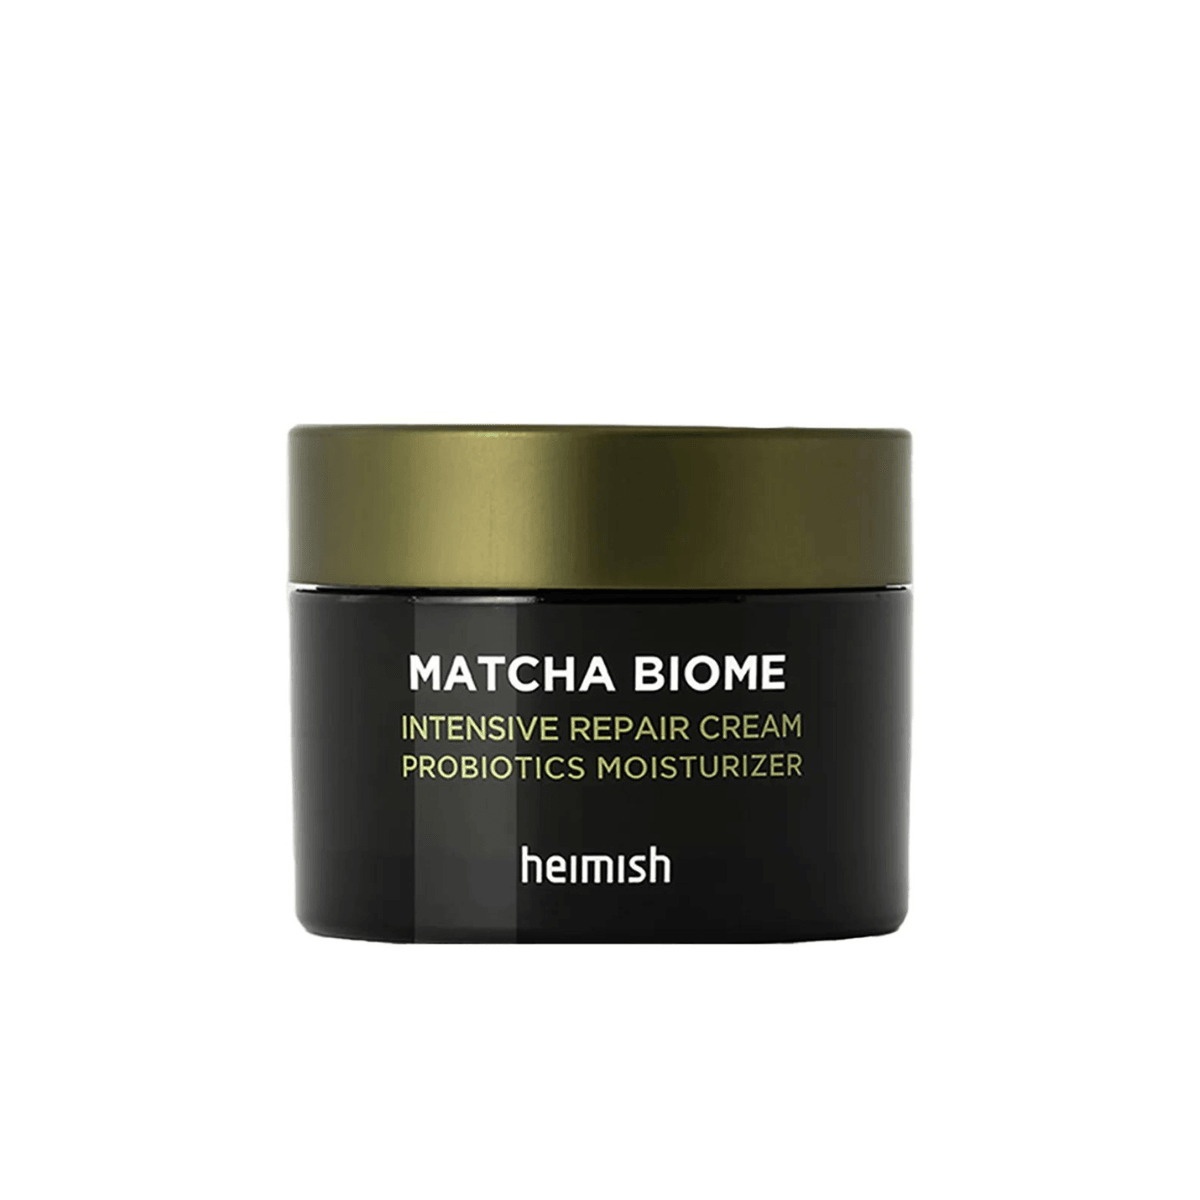 Matcha Biome Intensive Repair Cream - 50ml